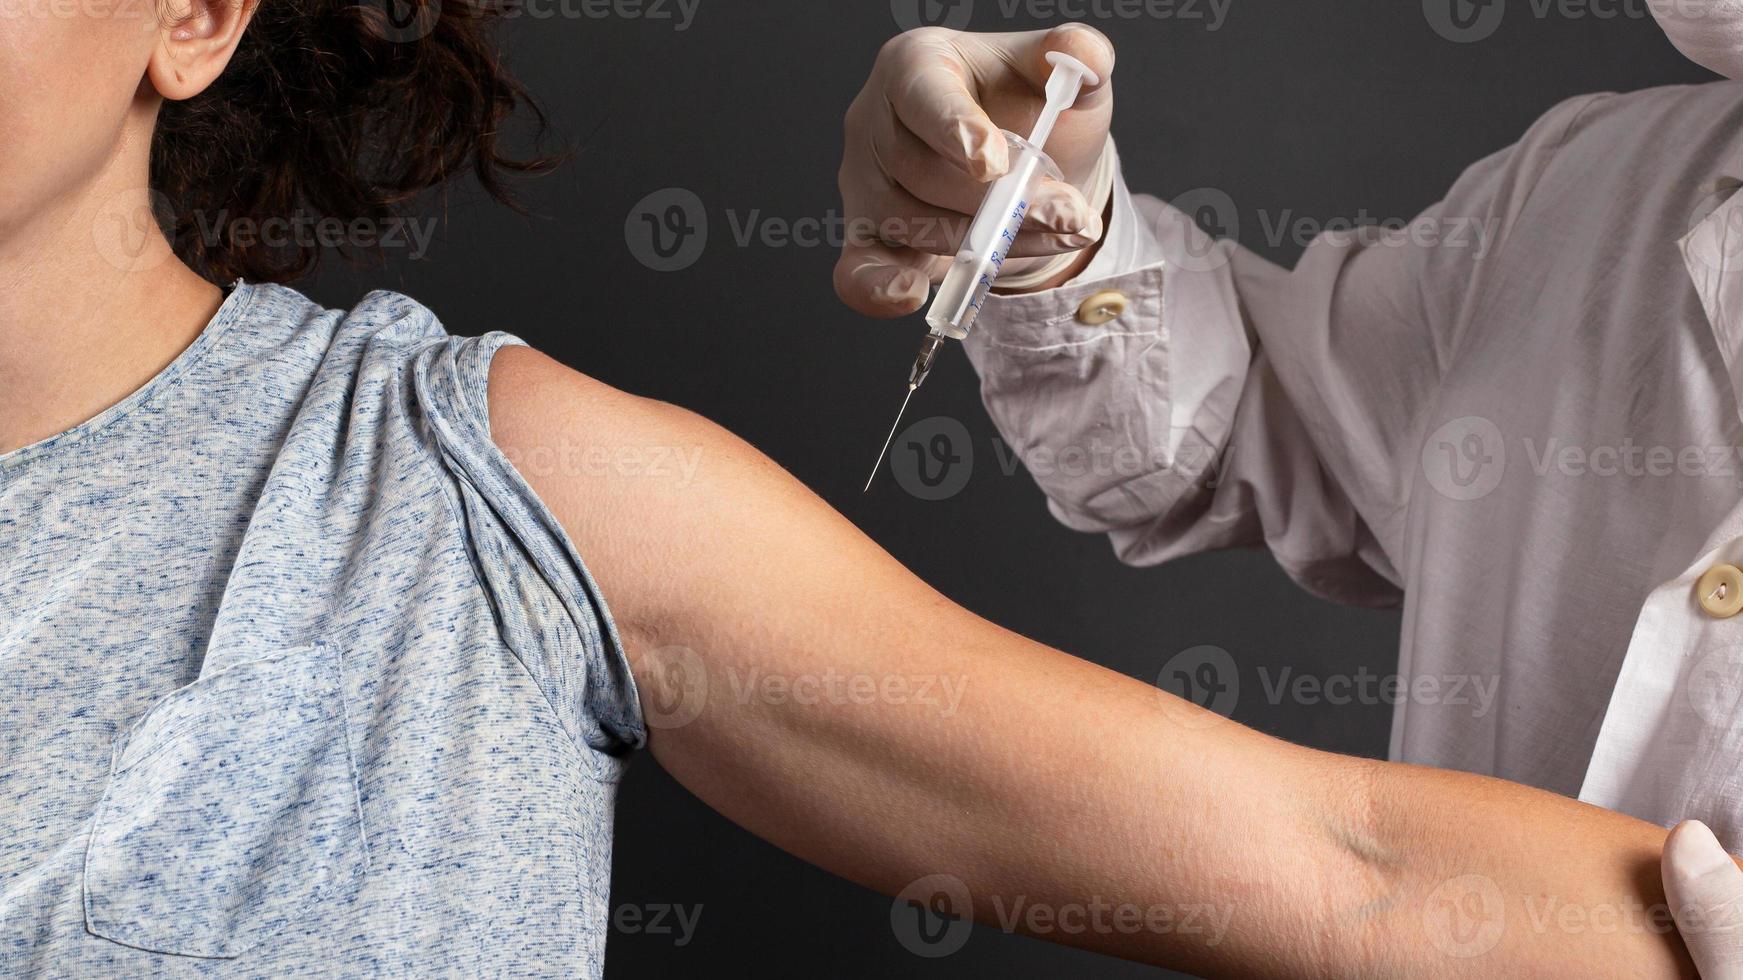 arts geeft een injectie aan een zieke patiënt op een donkere achtergrond foto